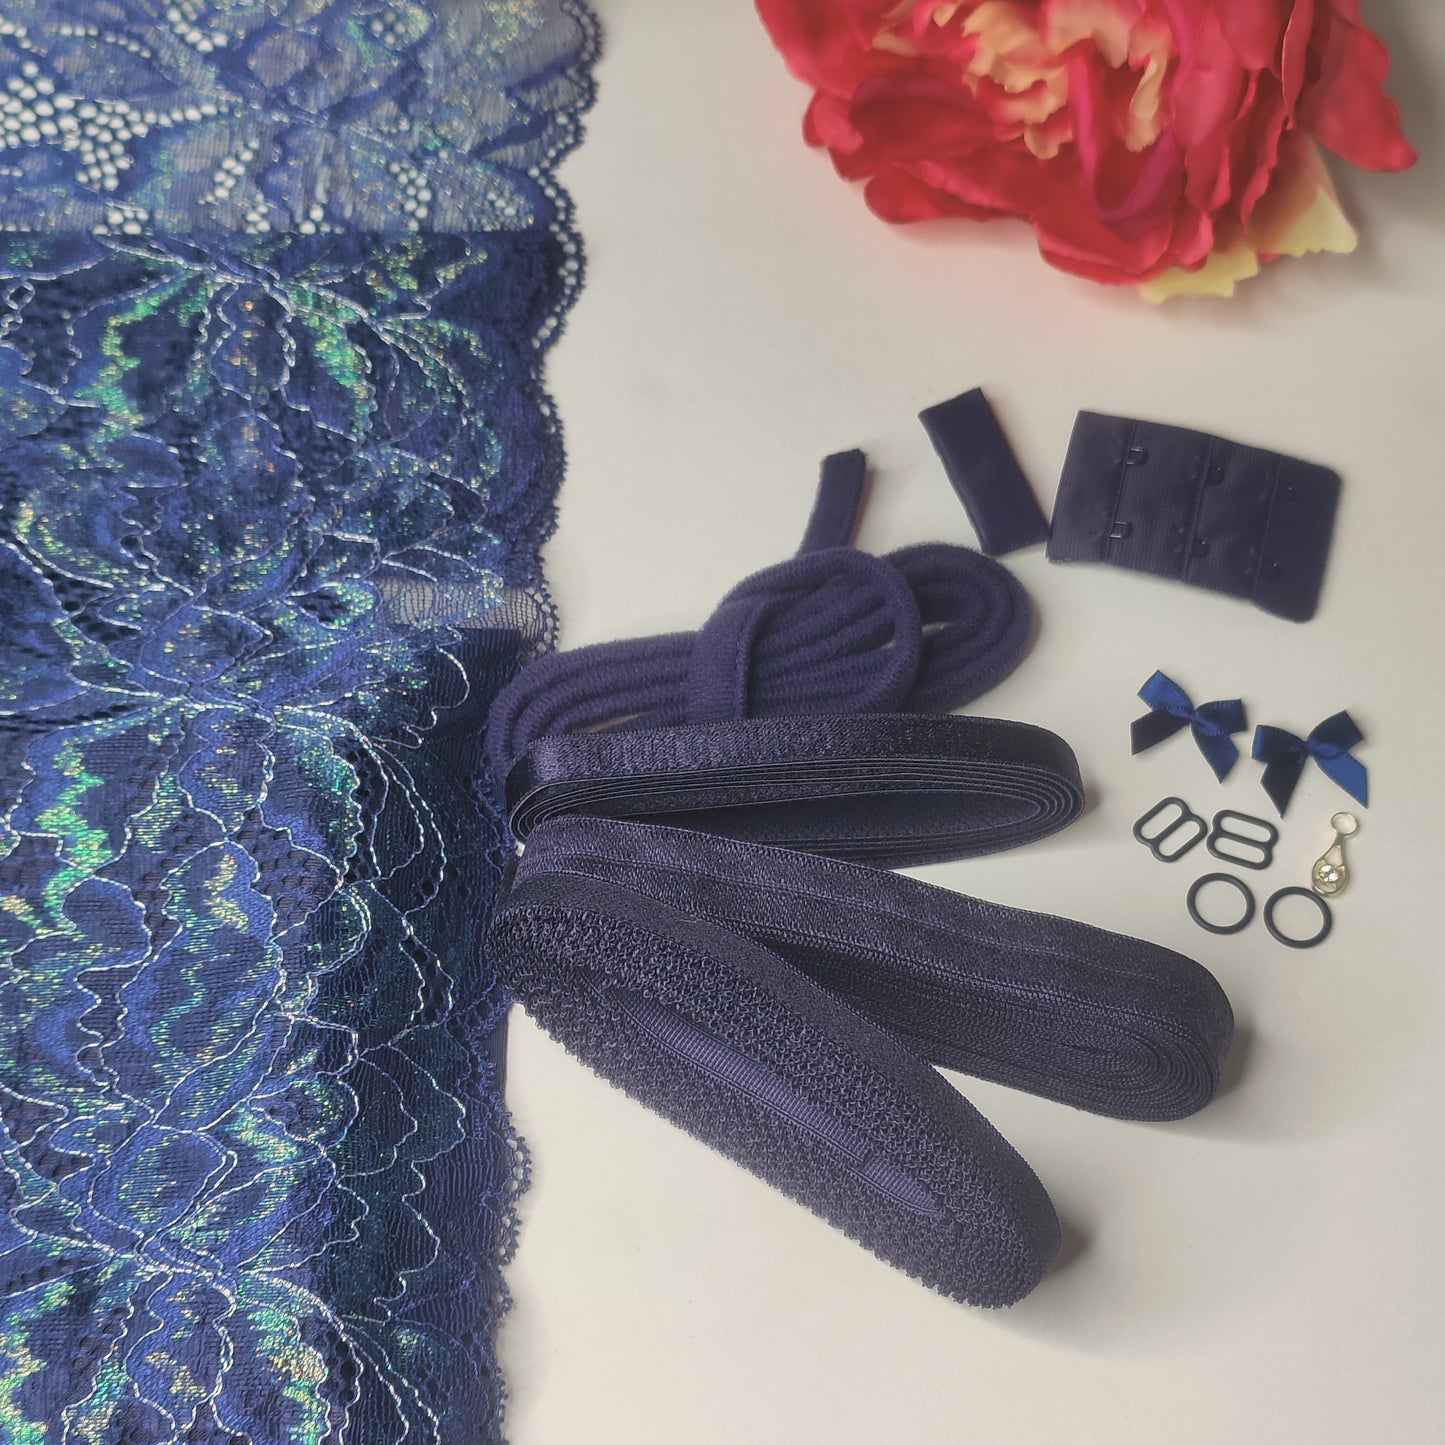 BH + Höschen diy Nähset / Kreativnähpaket mit Spitze und Mikrofaser, Midnight blue. Lingerie sewing kit with stretch lace IDnsx1